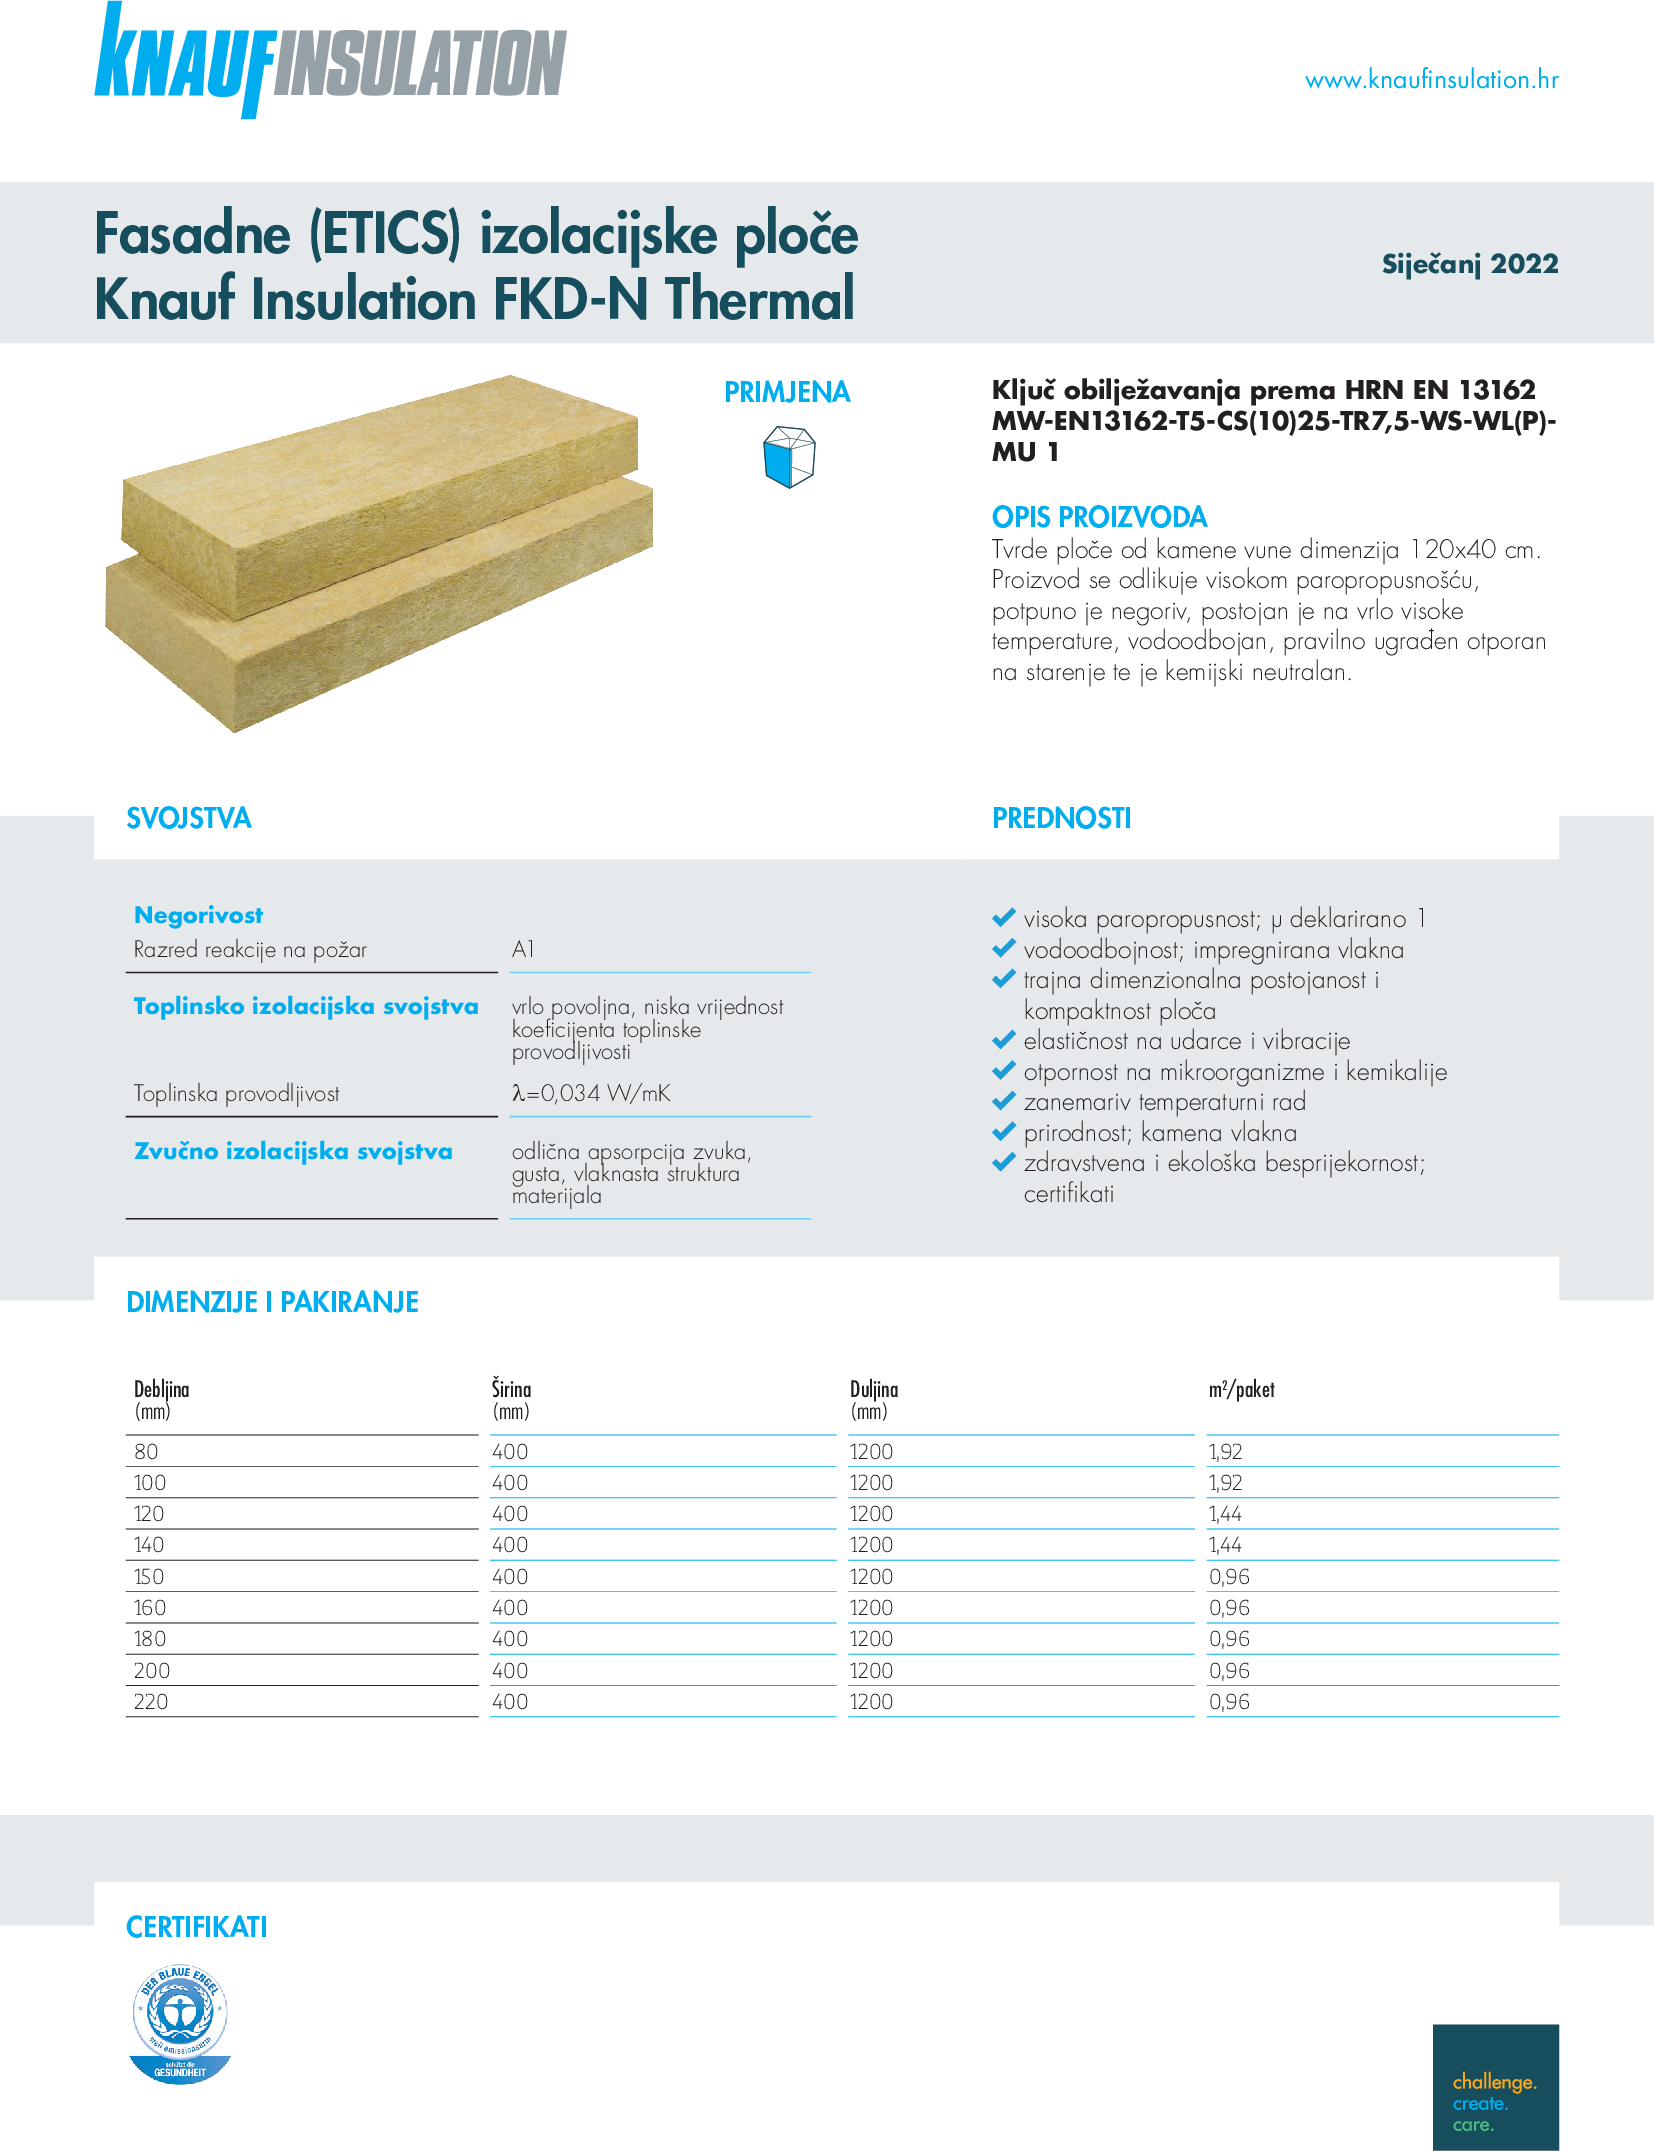 Knauf Insulation fasadne (ETICS) izolacijske ploče FKD-N Thermal